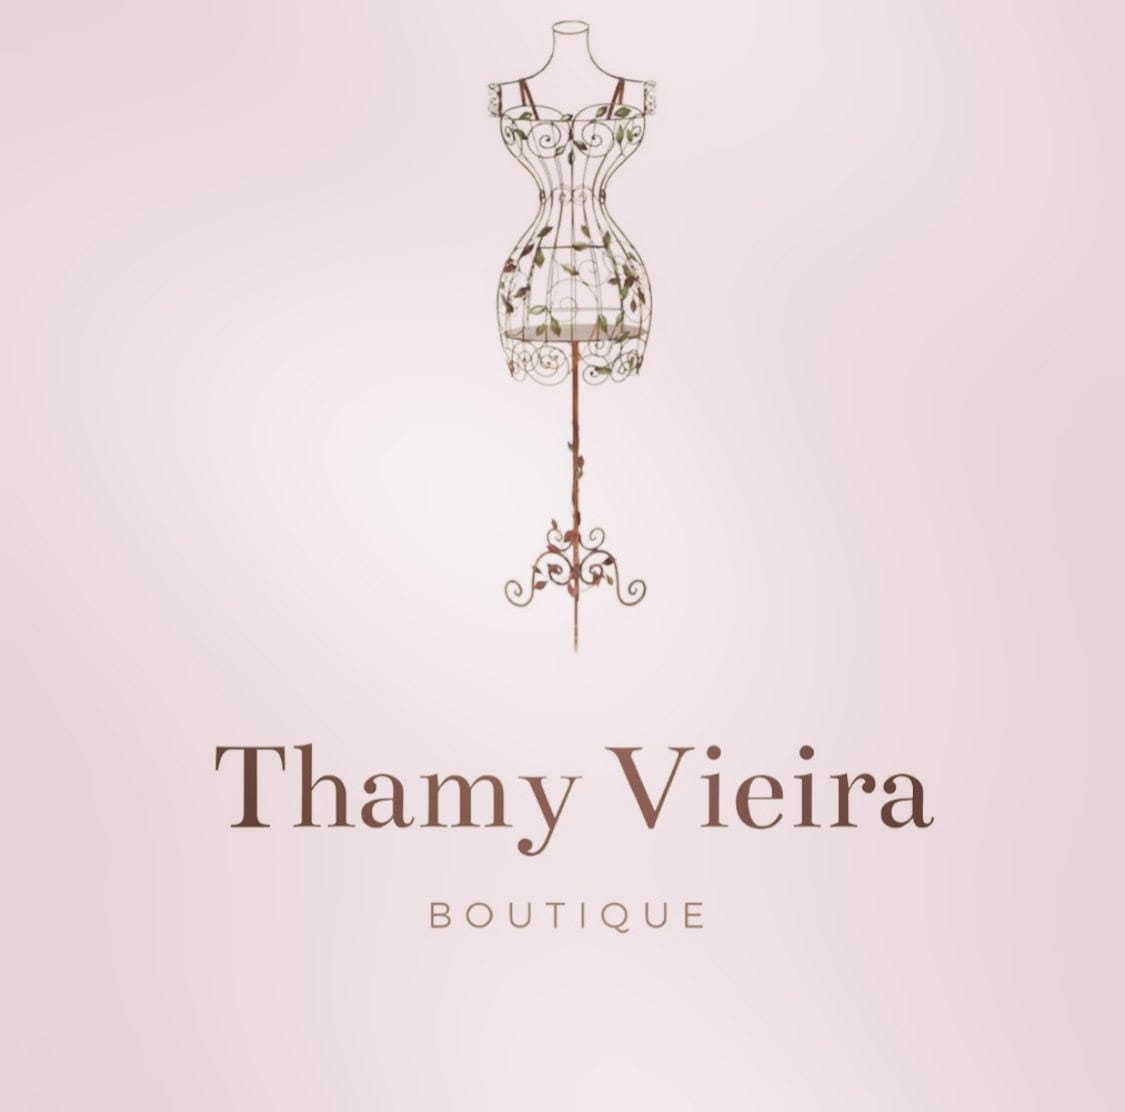 Thamy Vieira